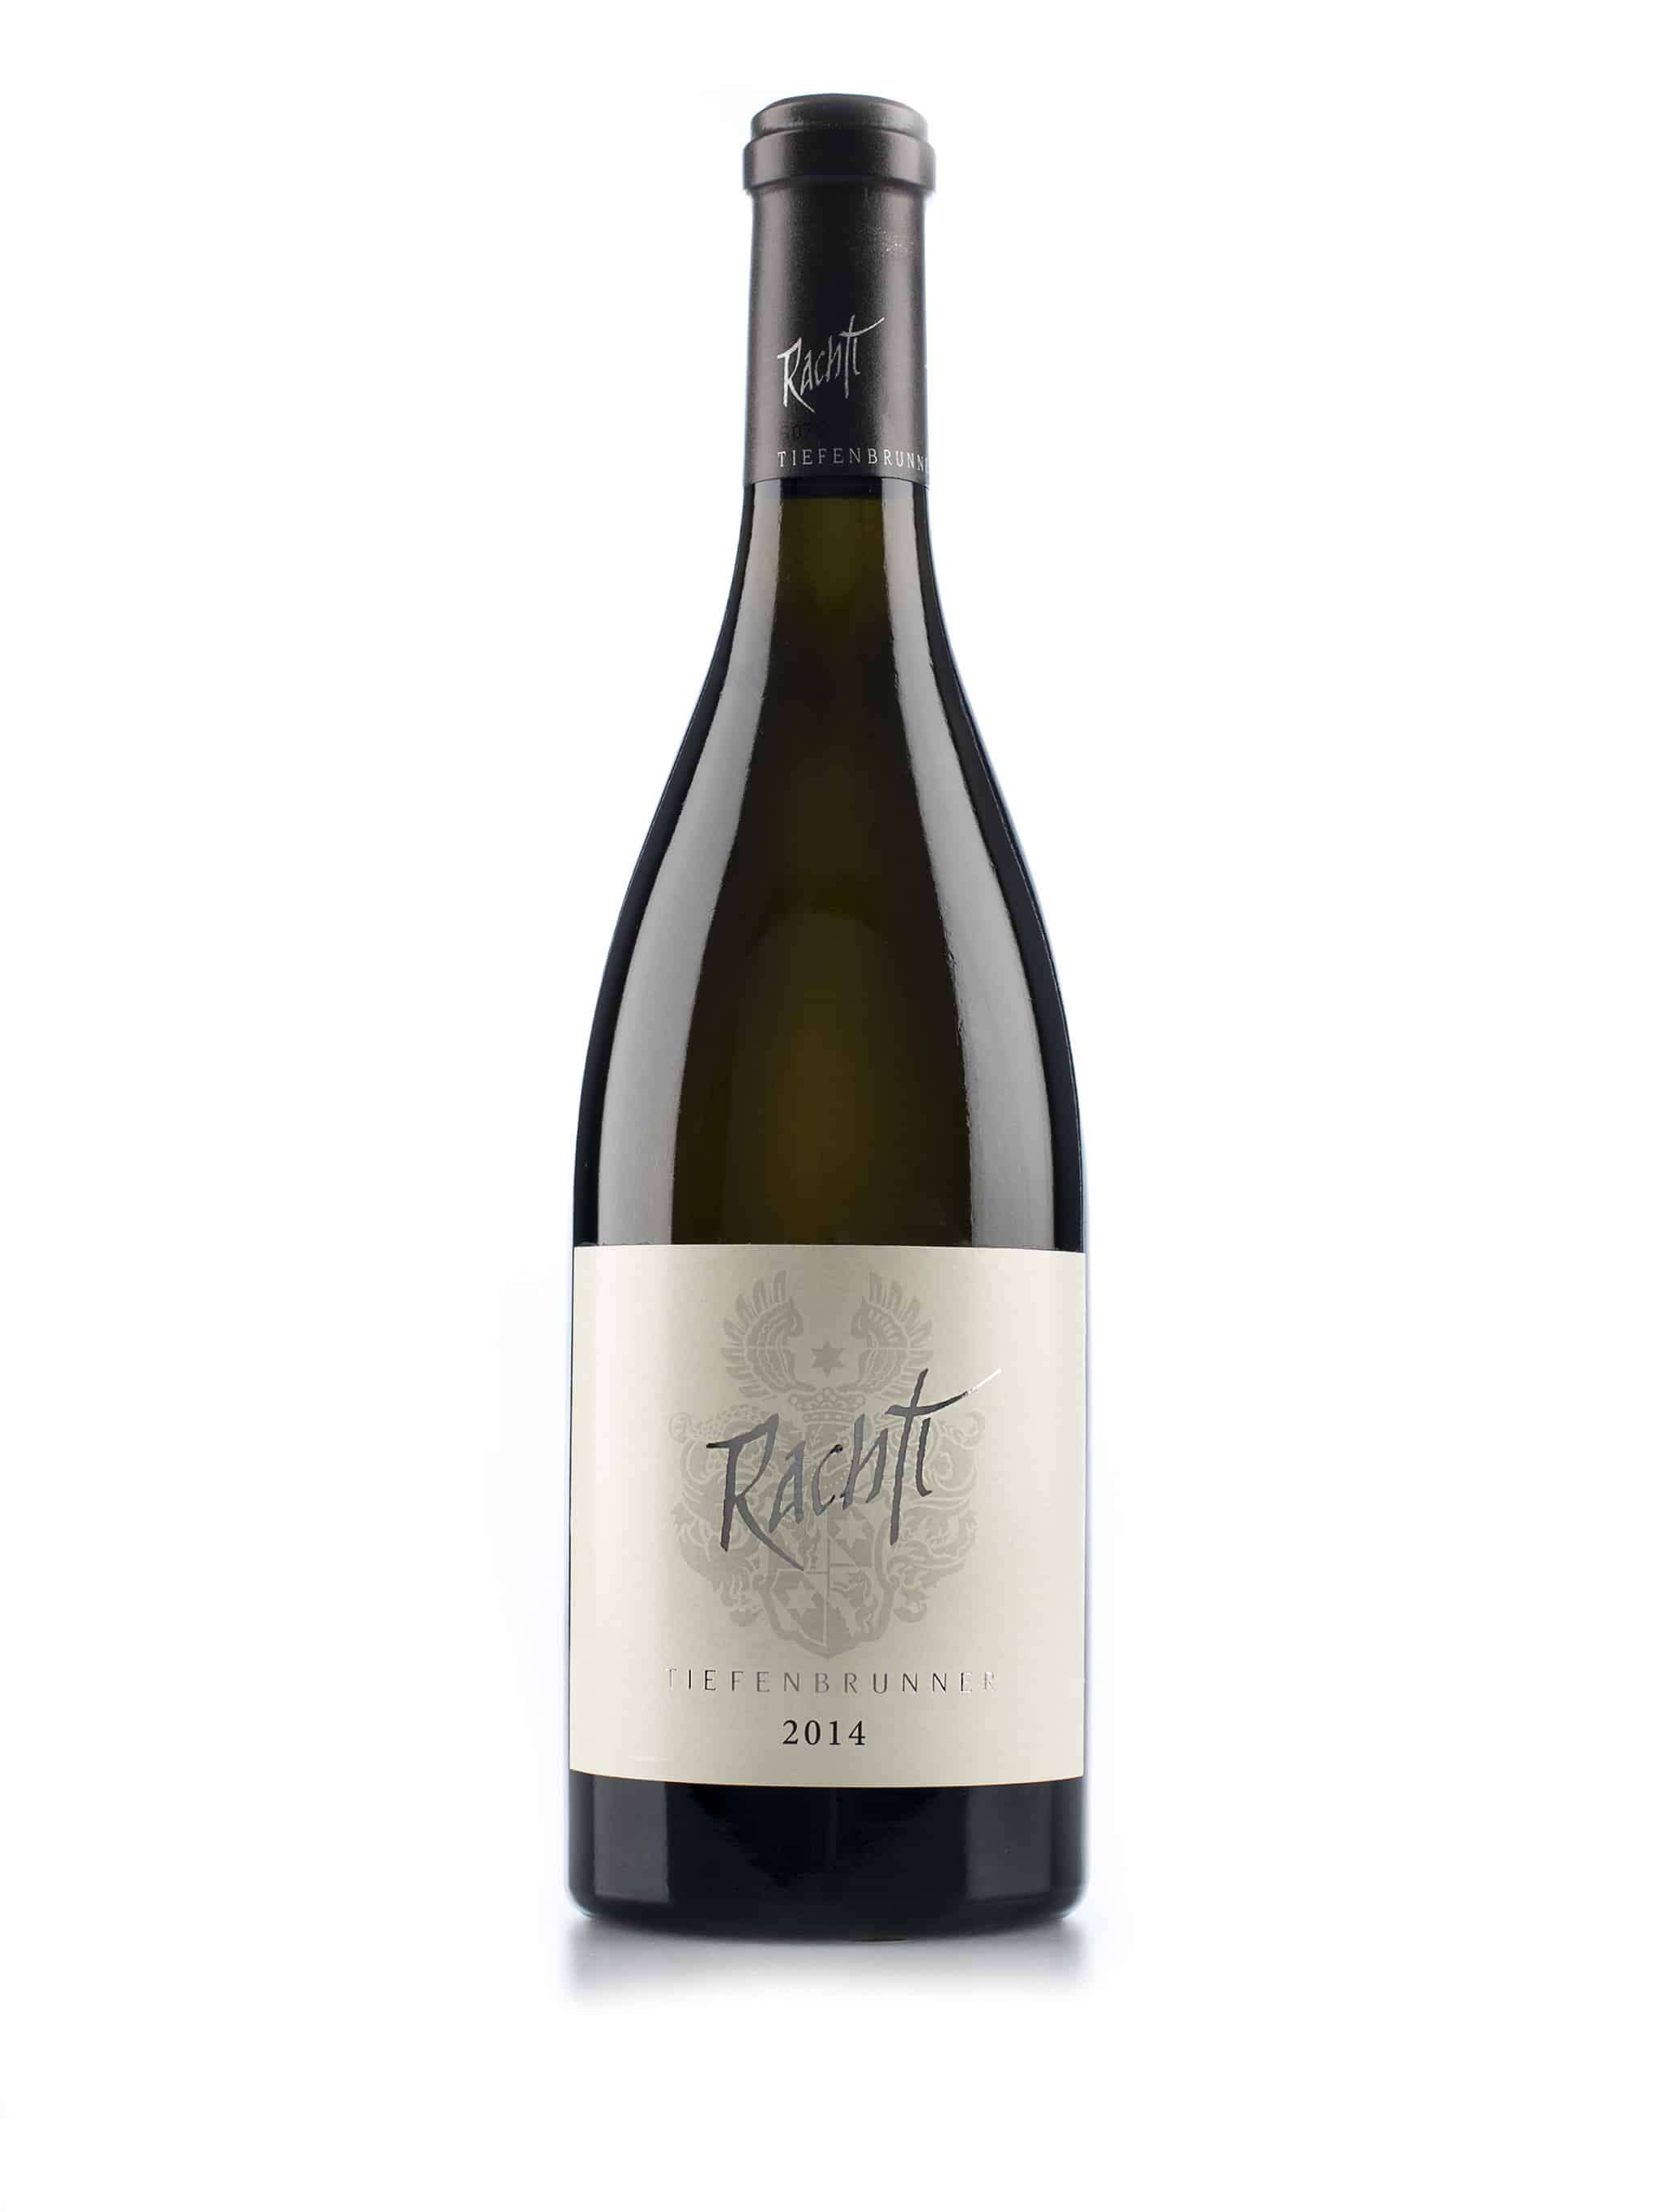 Italiaanse witte wijn van wijndomein Tiefenbrunner: Sauvignon Blanc 'Rachtl'